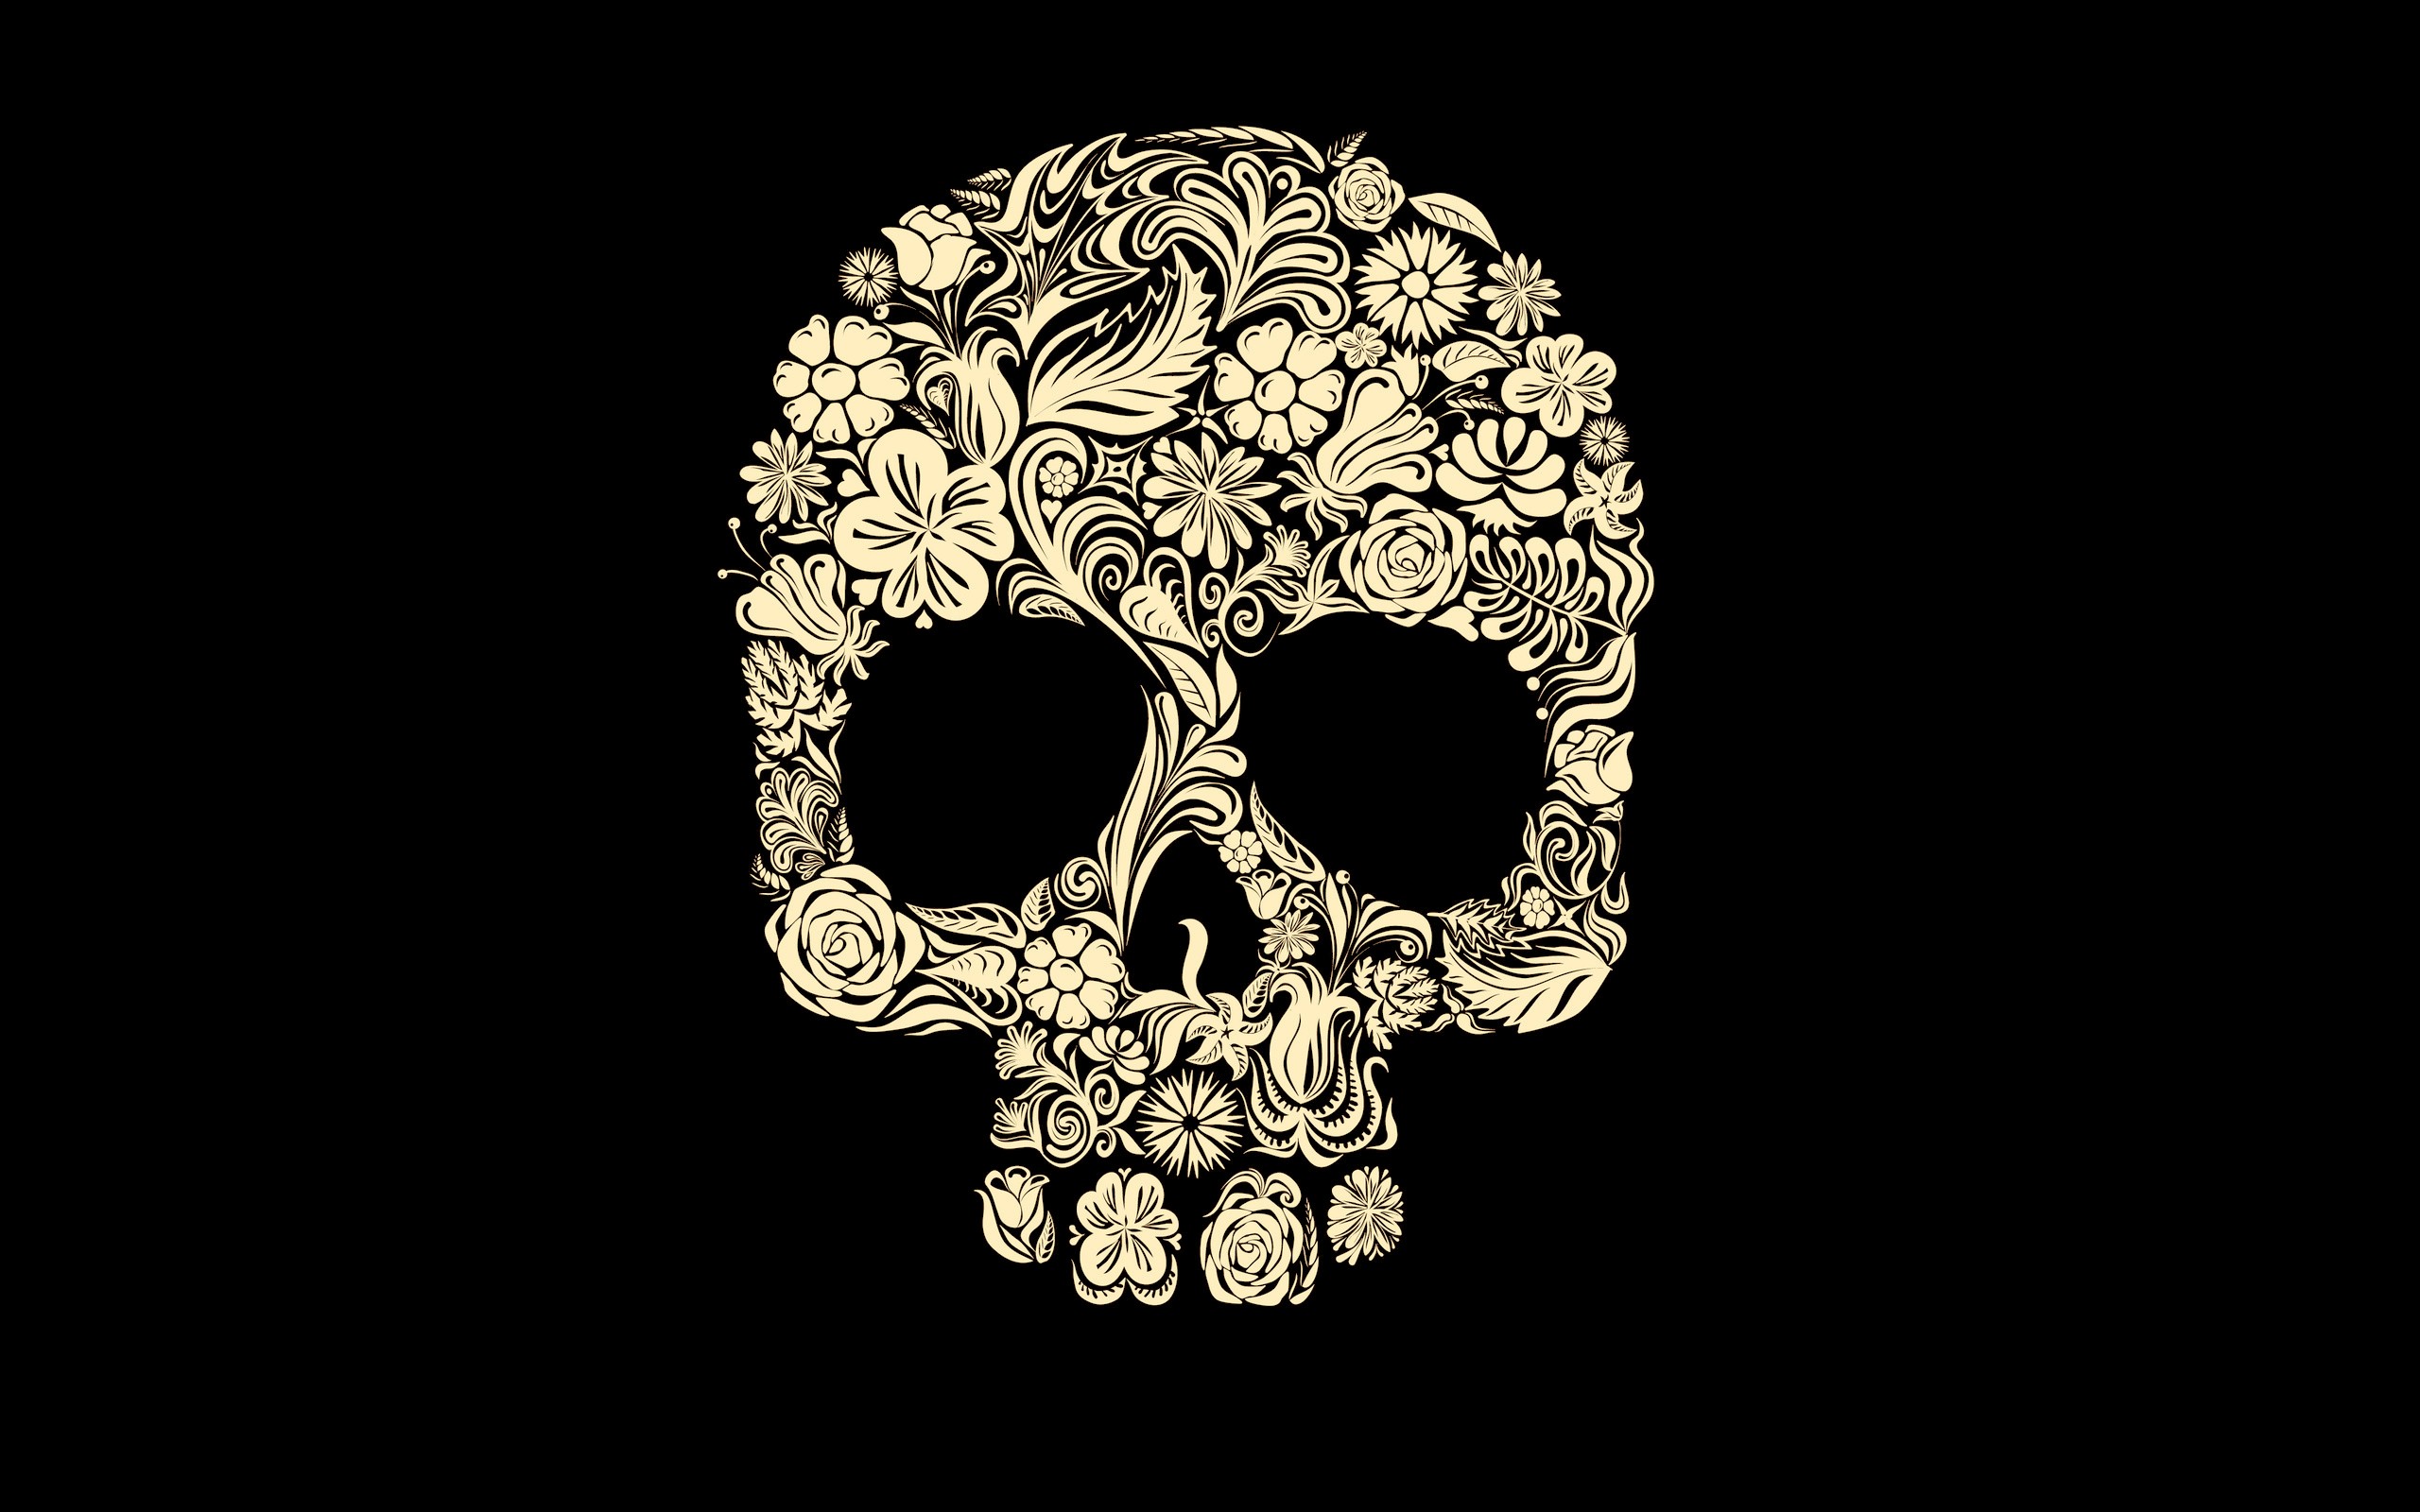 Dark Skull Wallpaper 2560x1600 Dark Skull